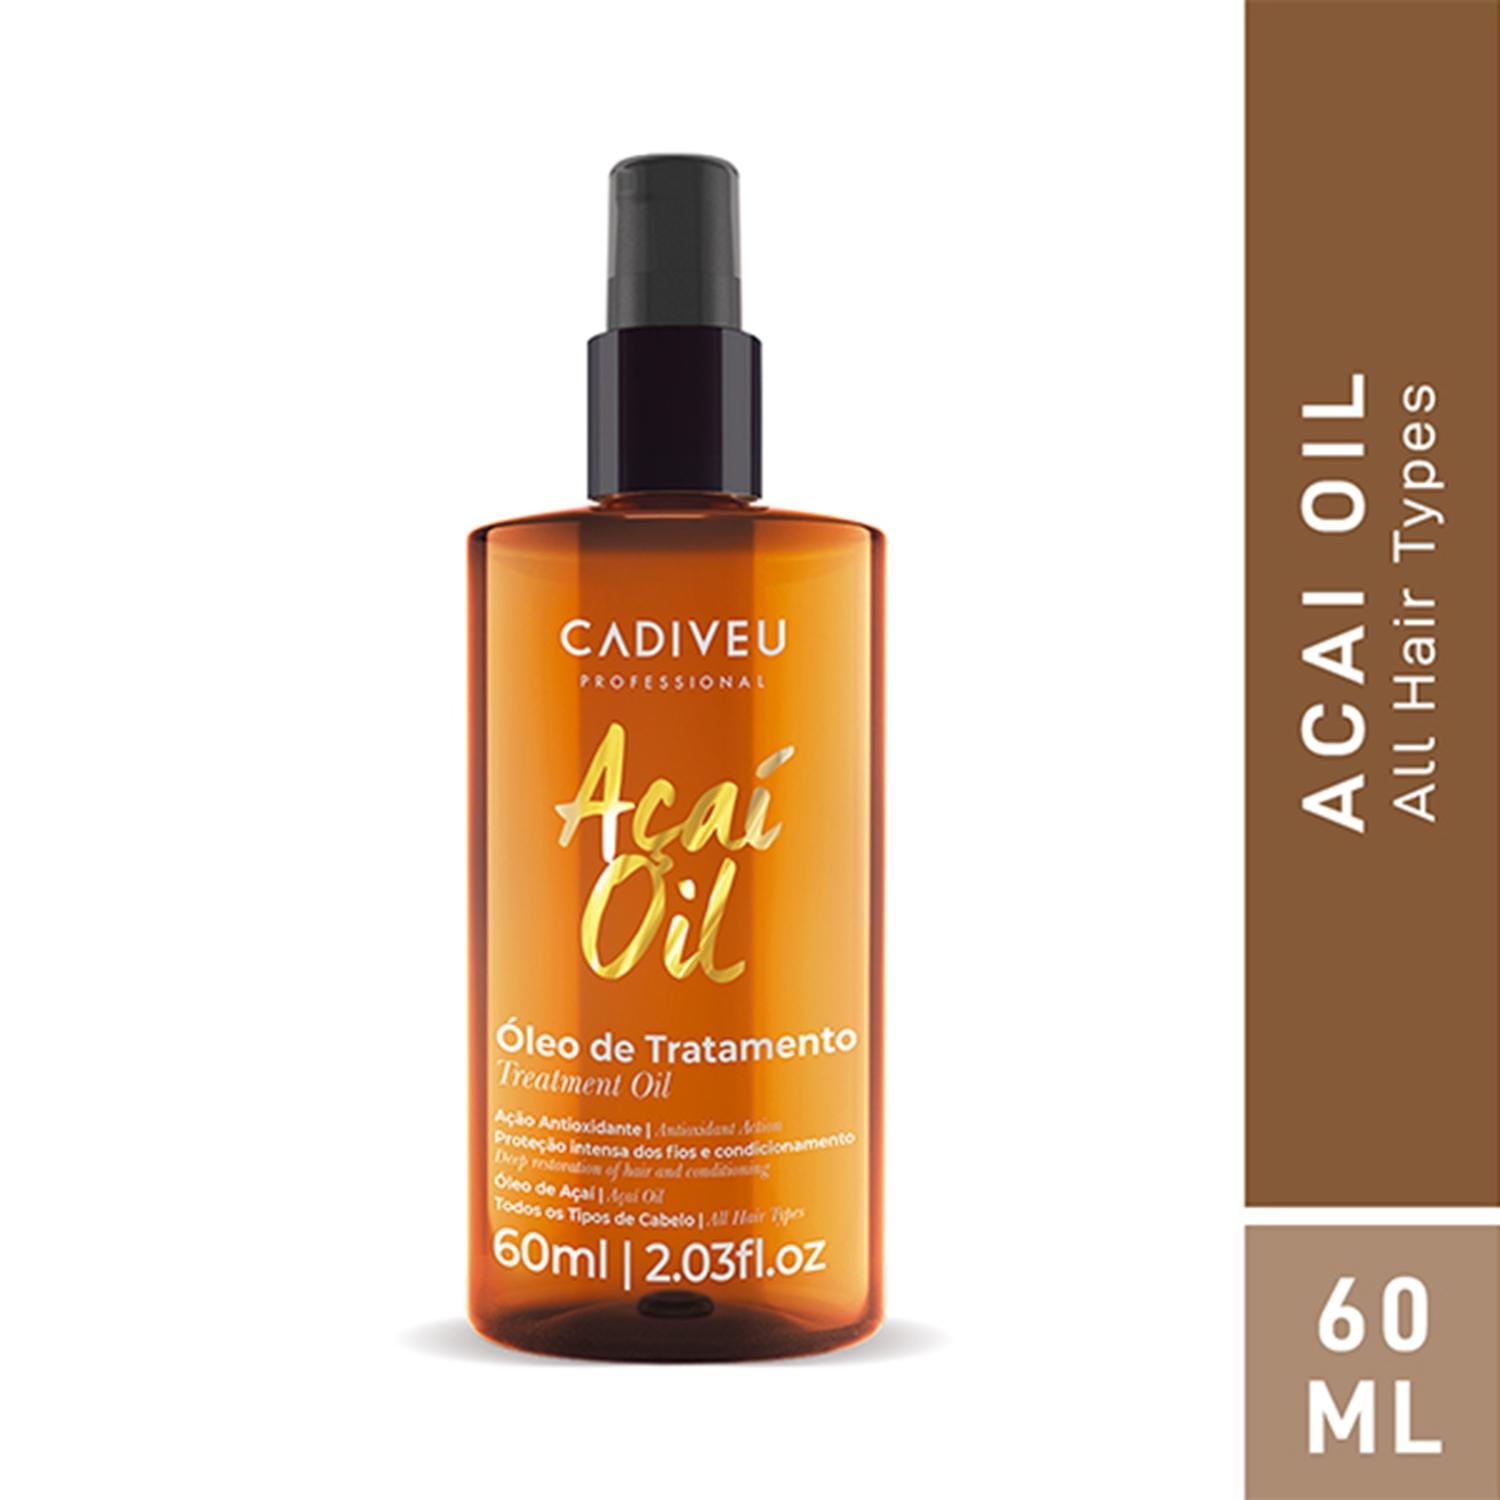 cadiveu - acai oil (60ml)